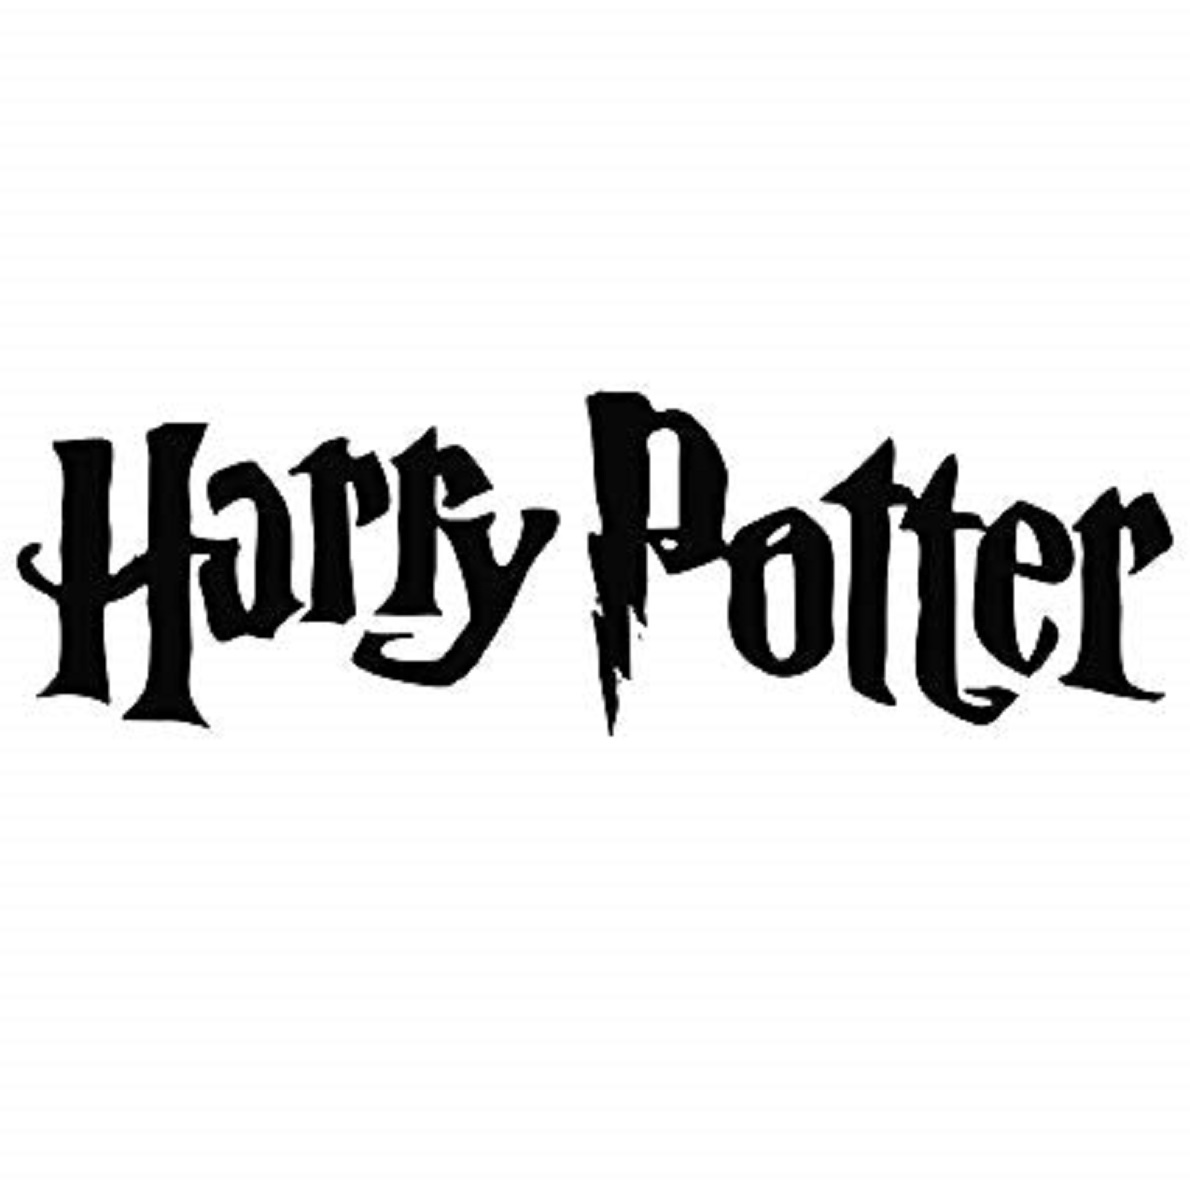 哈利波特片头logo图片